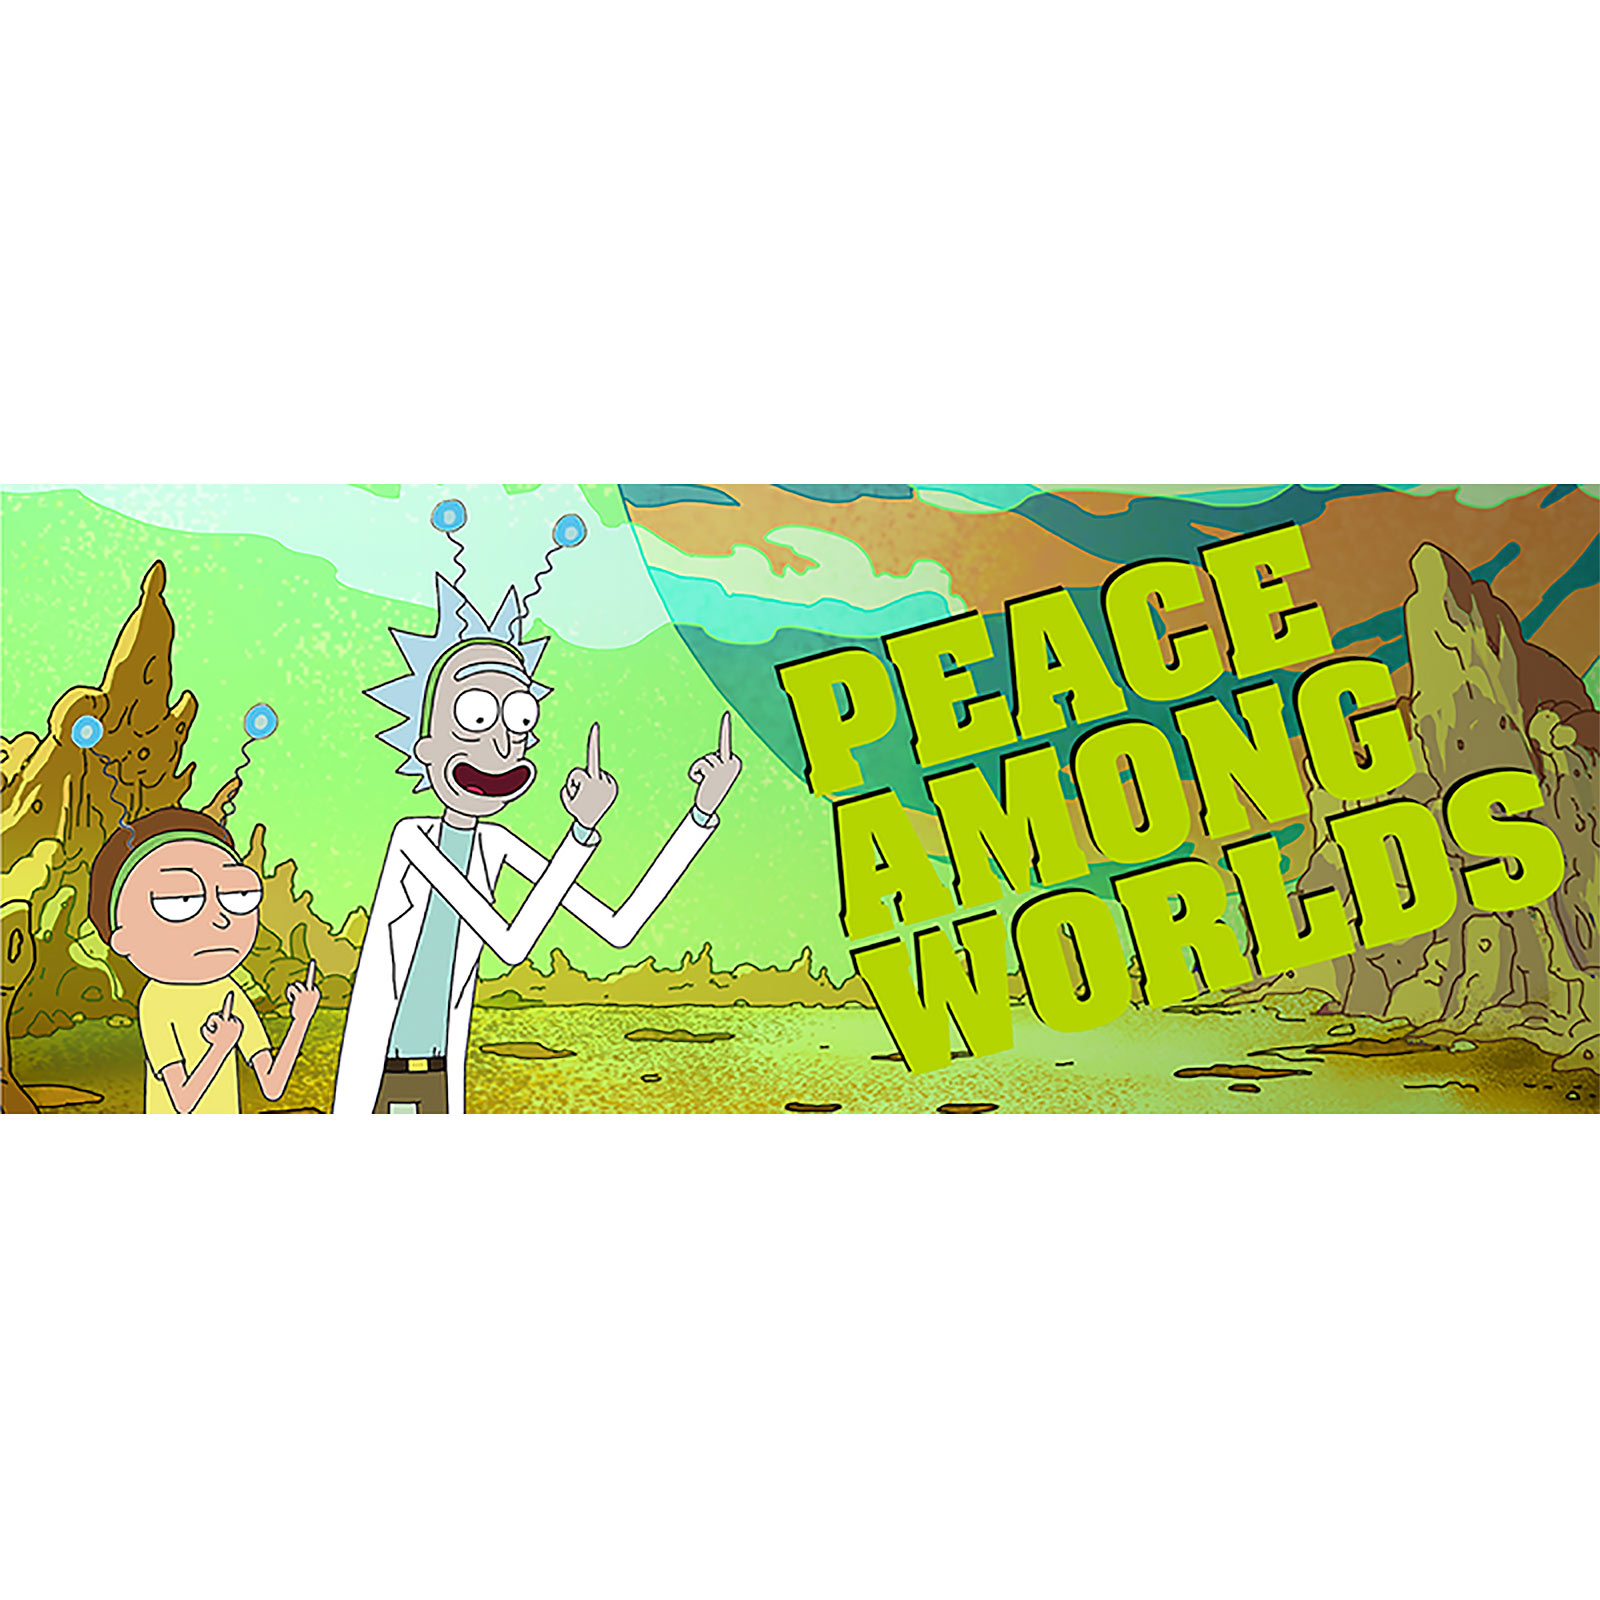 Rick and Morty - Peace Mug